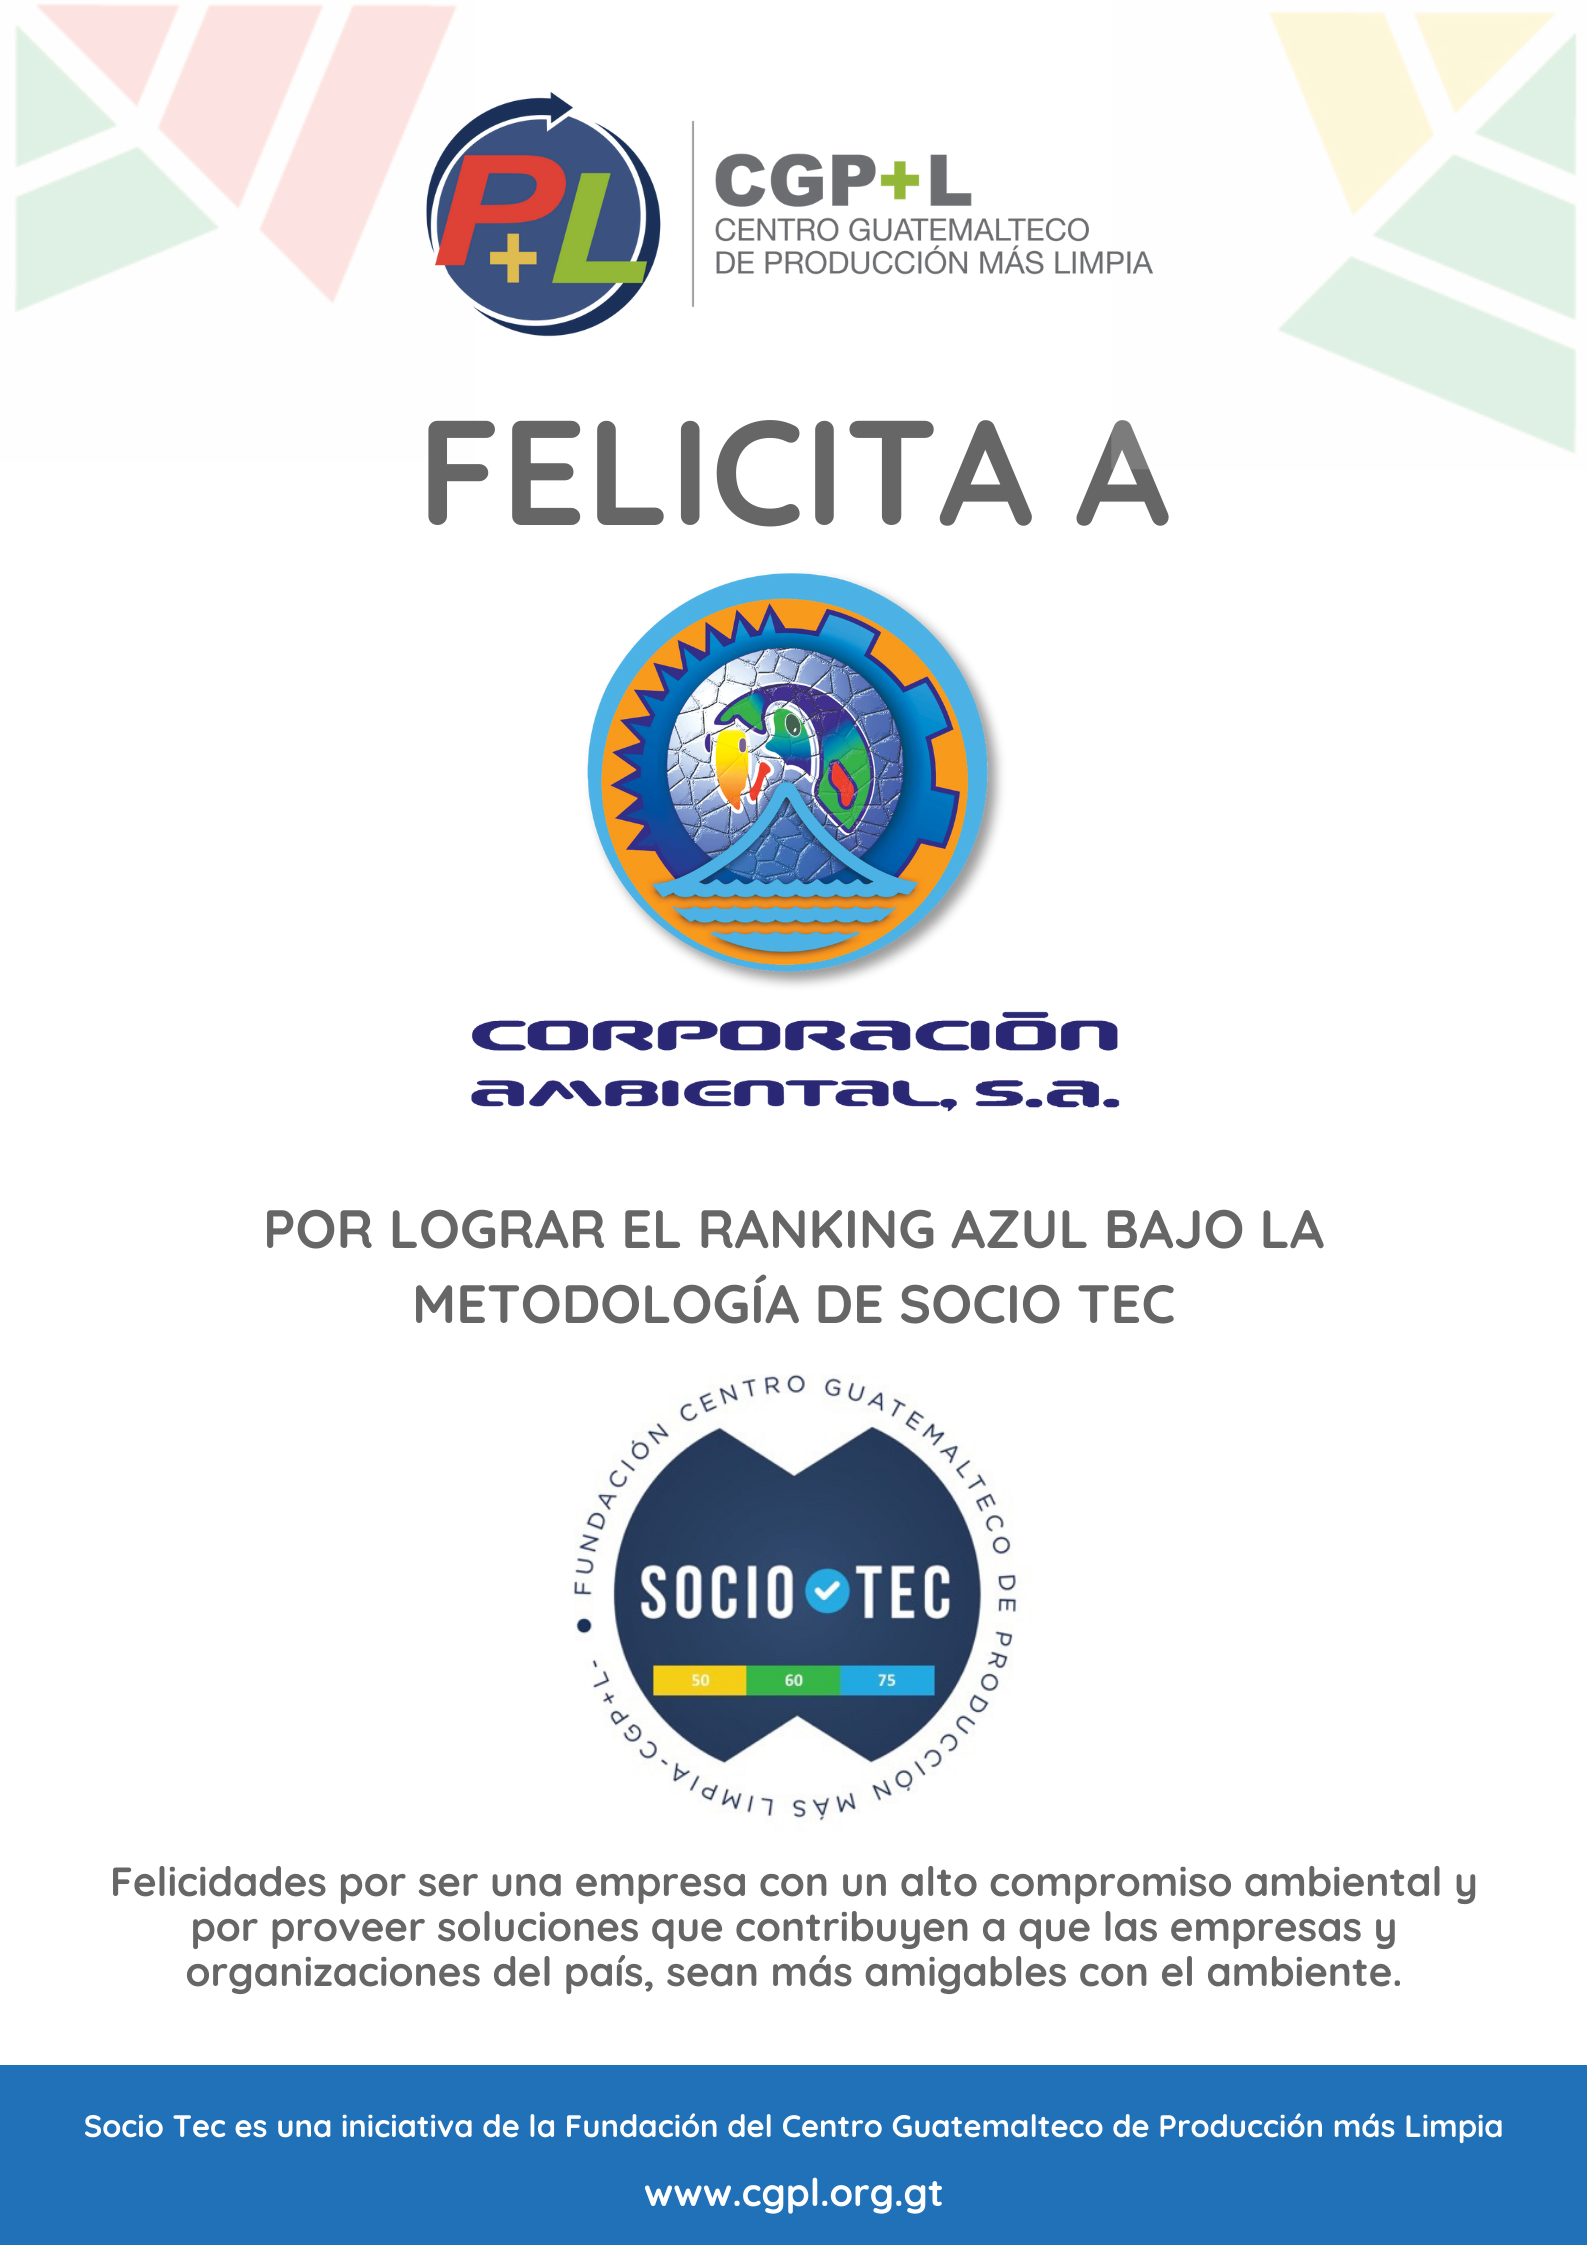 Felicidades A CORPORACIÓN AMBIENTAL Por Lograr Ranking Técnico Azul En La Metodología Socio Tec